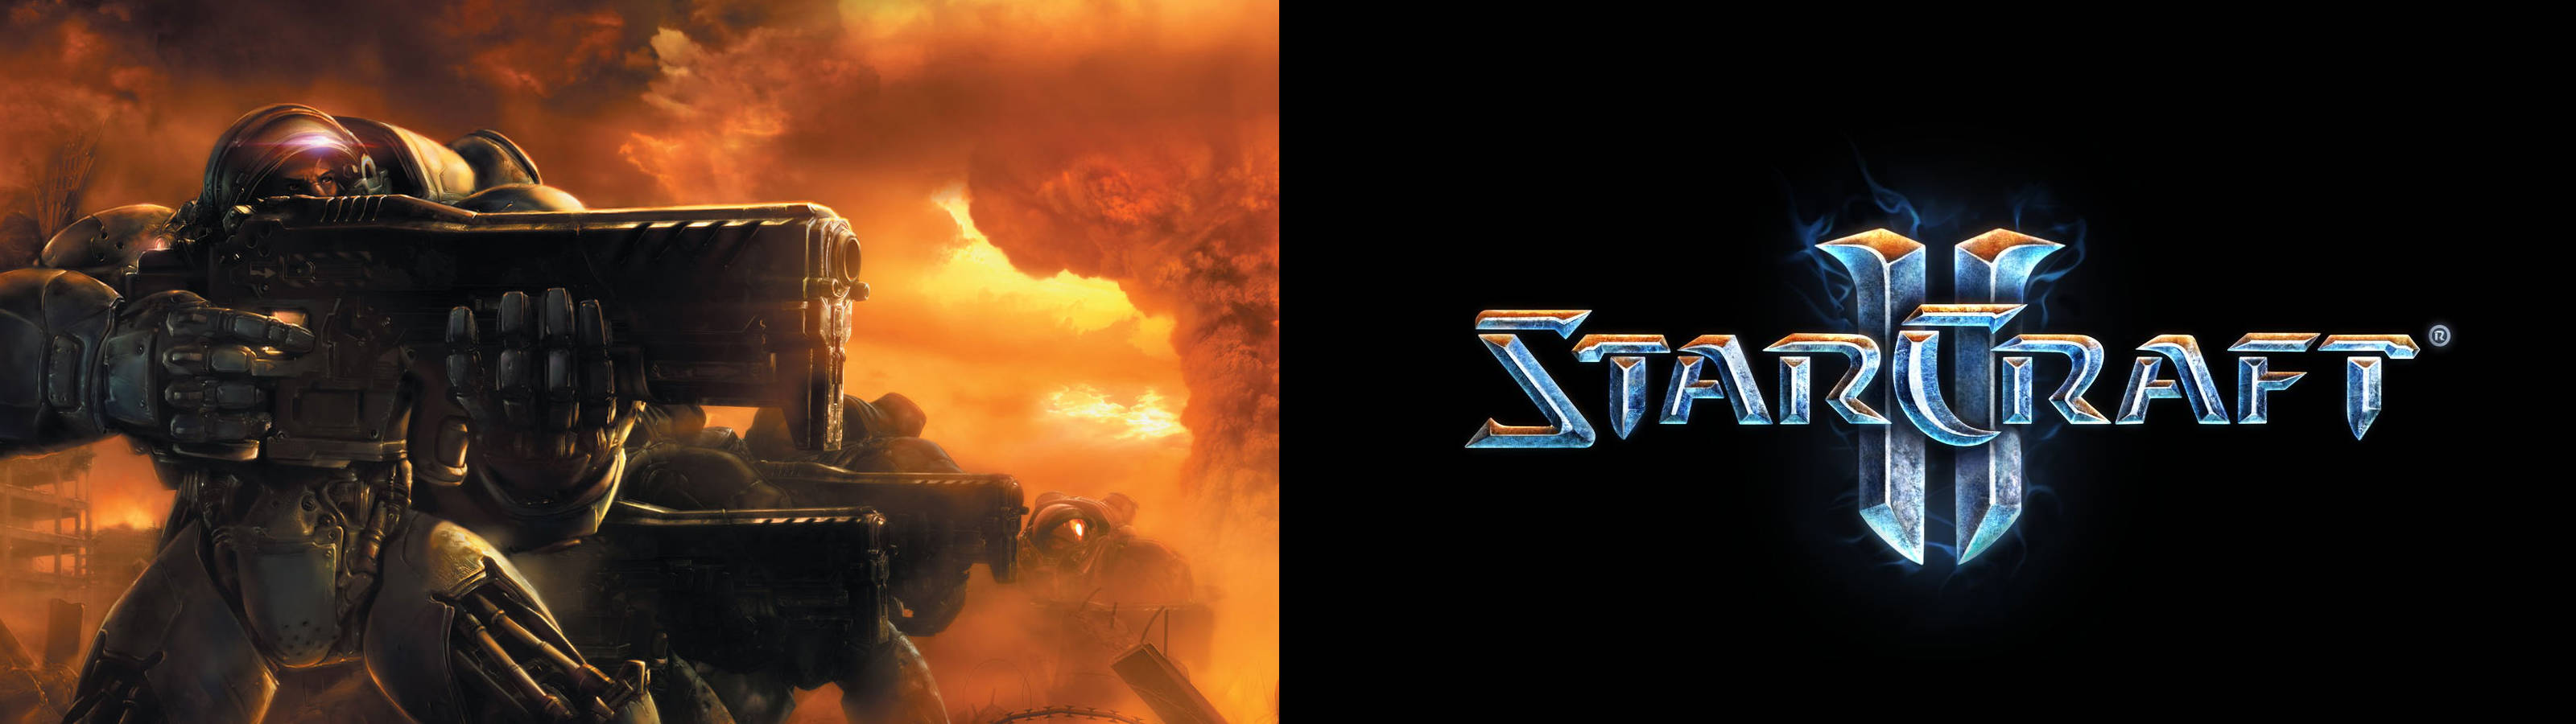 Starcraft 2 Fiery Plakat Wallpaper